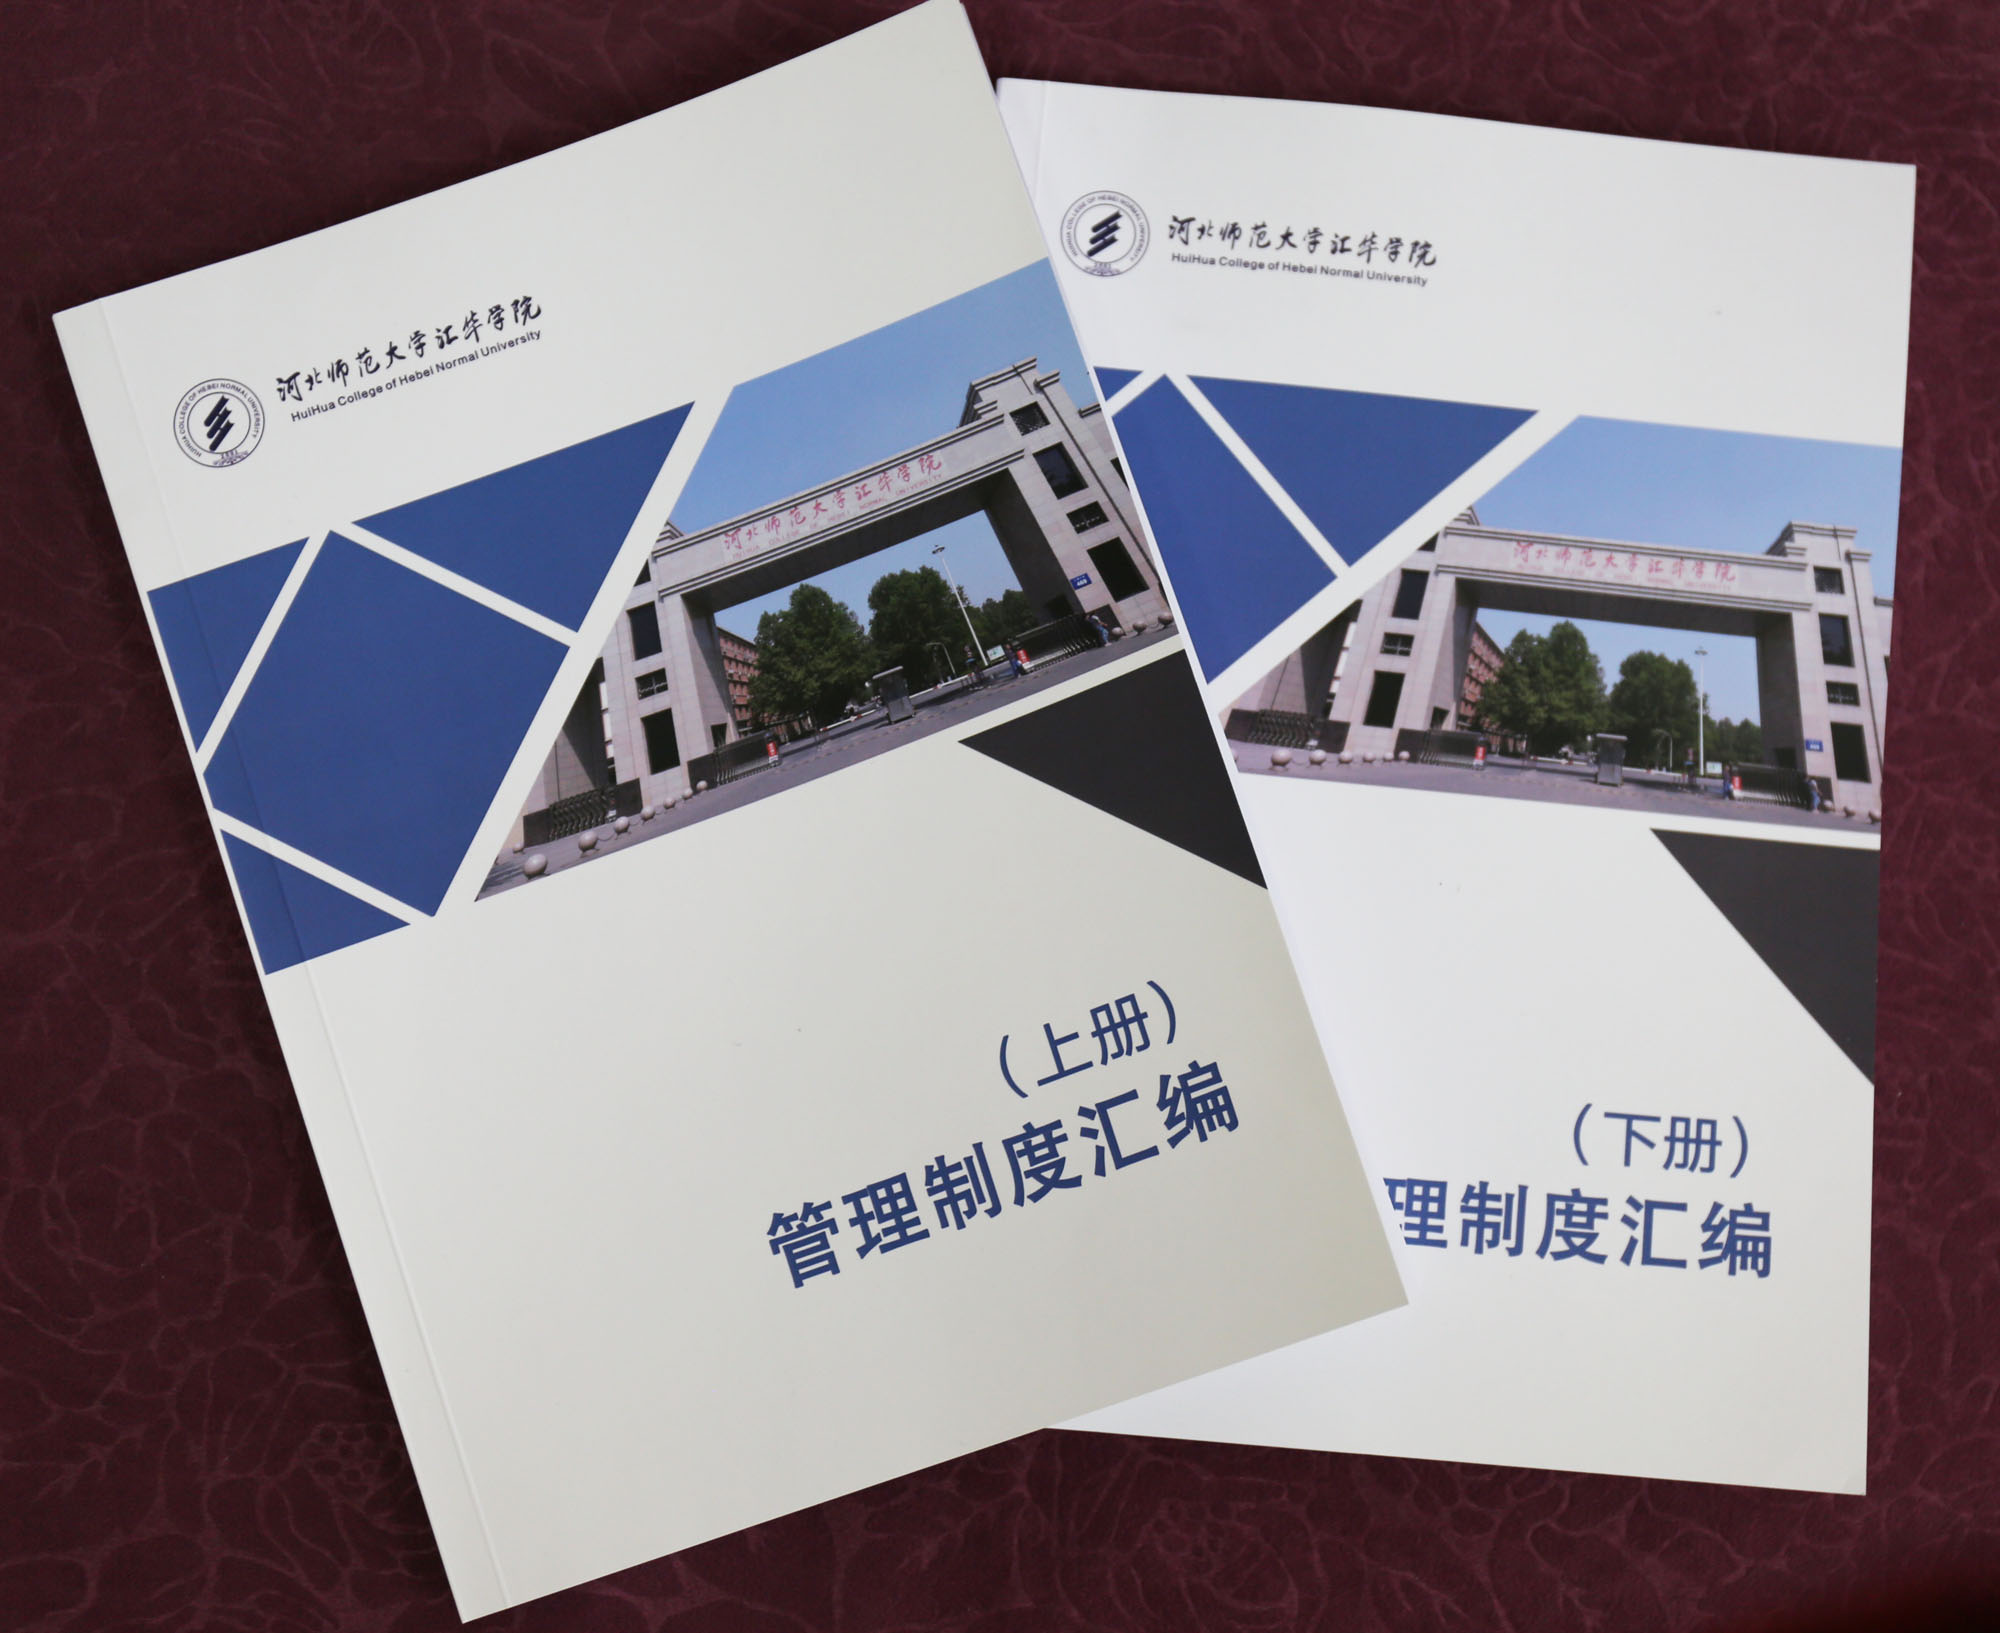 学院办公室自2017年初启动了《河北师范大学汇华学院管理制度汇编》